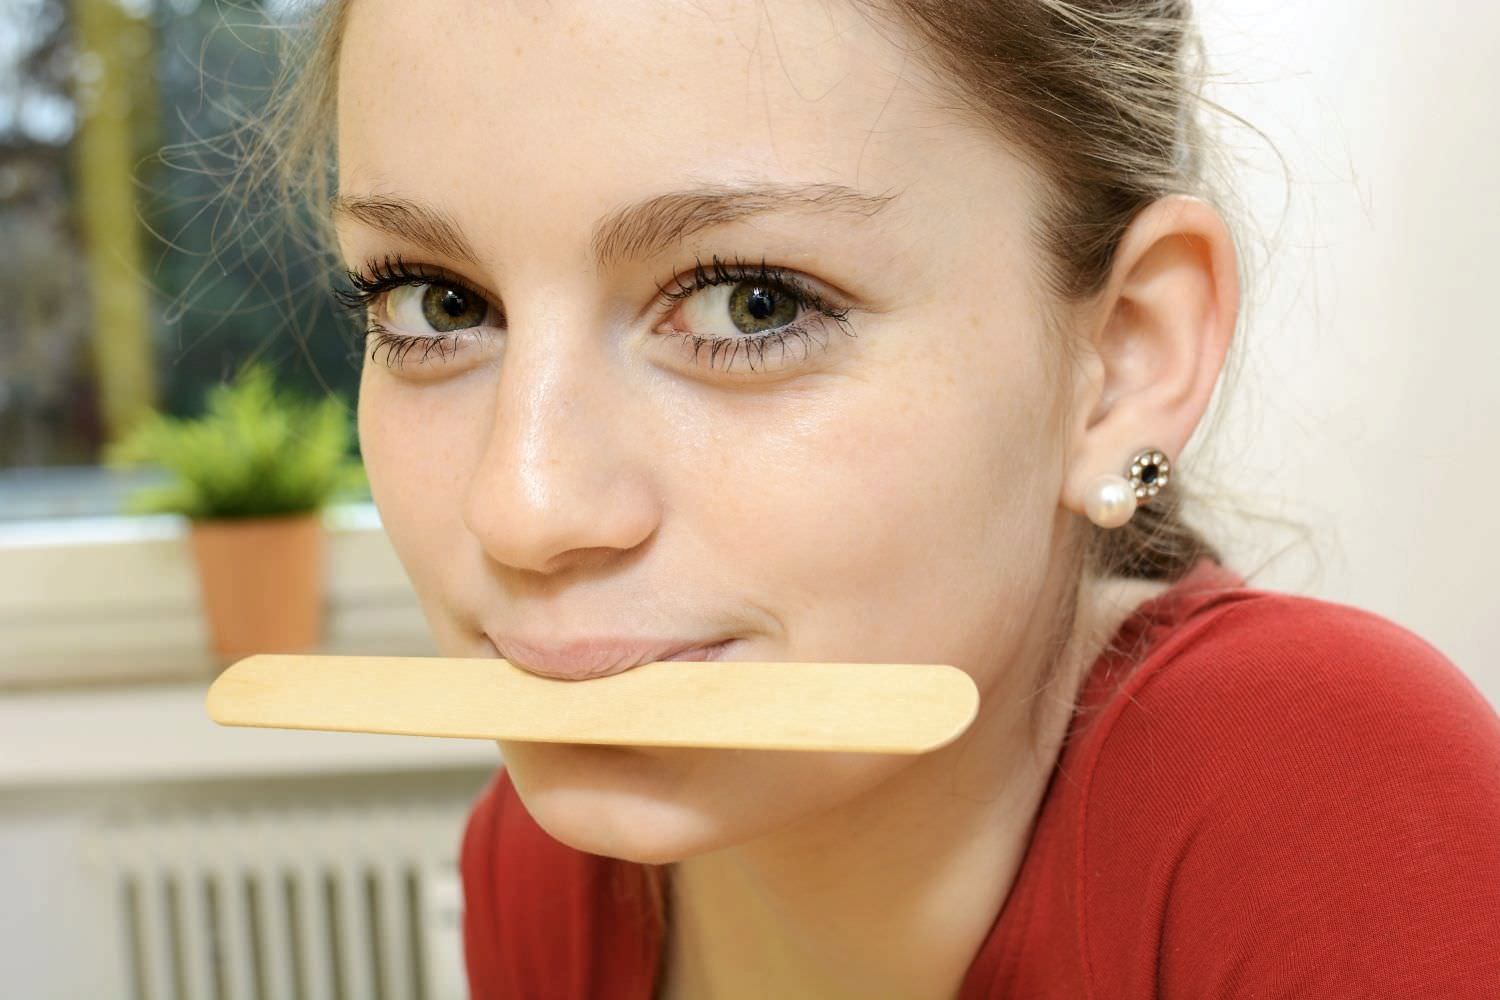 Bild zeigt: Junges Mädchen mit Holzstab zwischen den Lippen gepresst